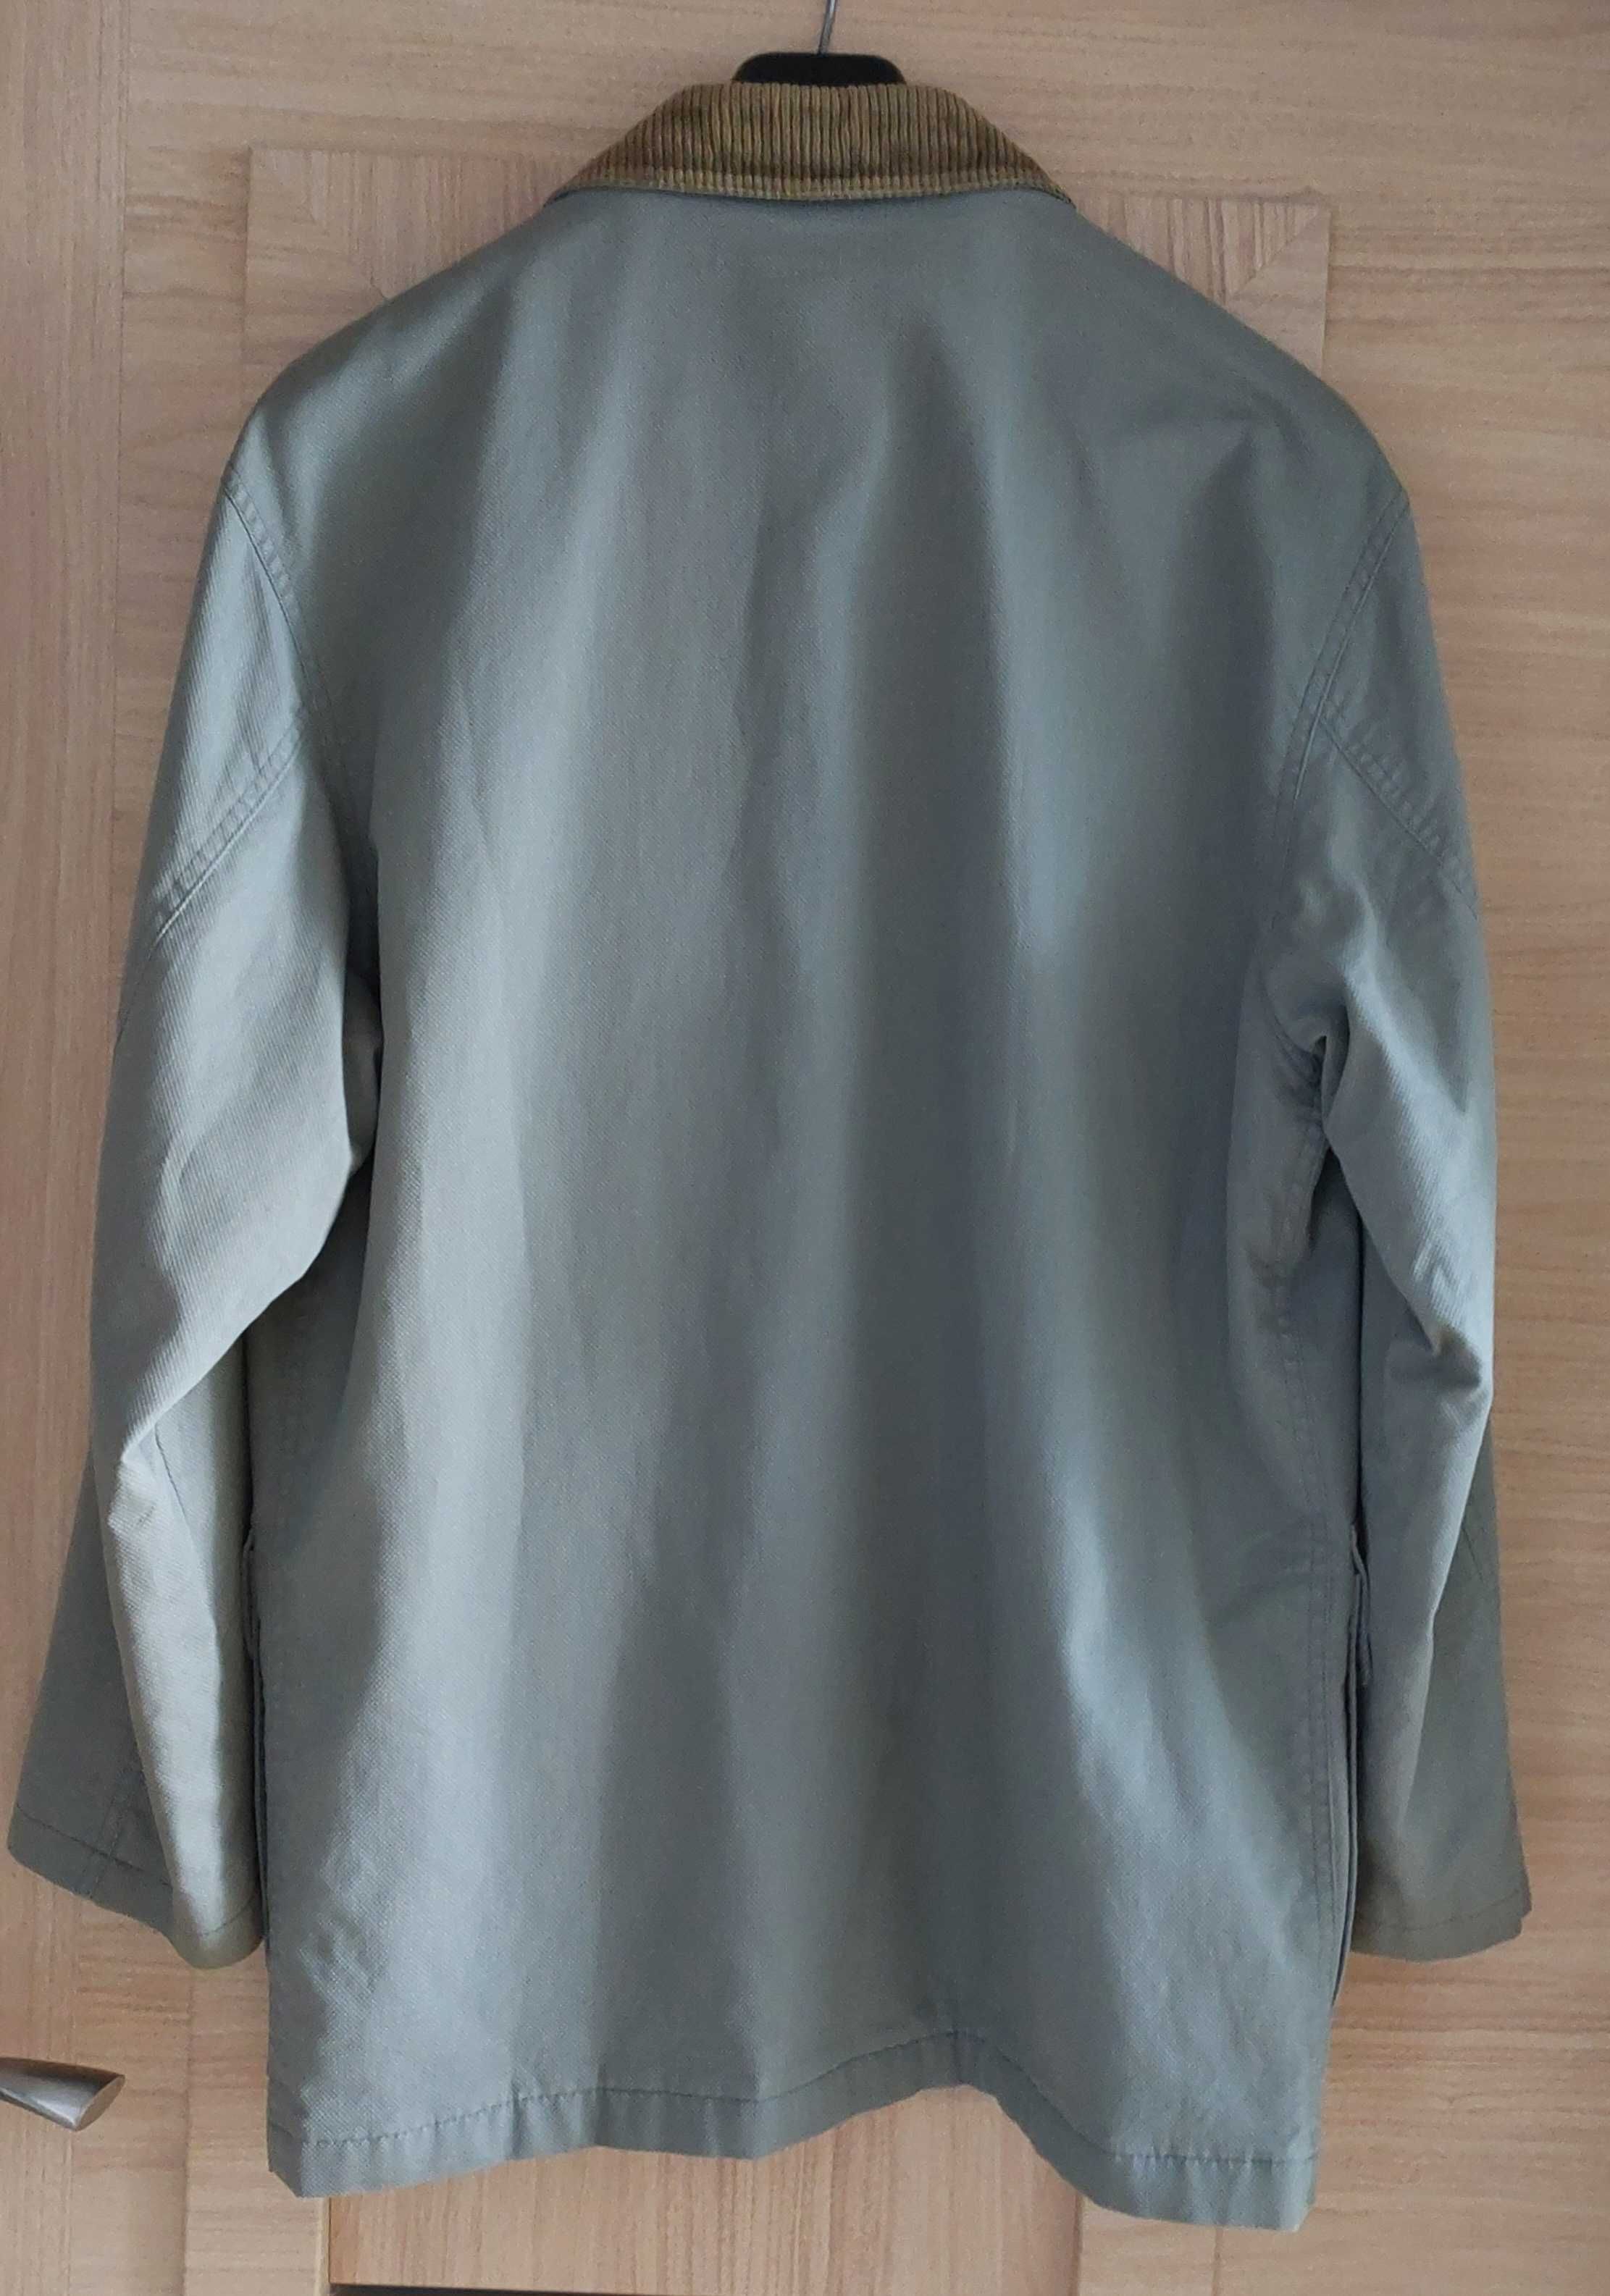 Płaszcz kurtka męska hydrofobowa na marynarkę Próchnik 172 / 174 cm